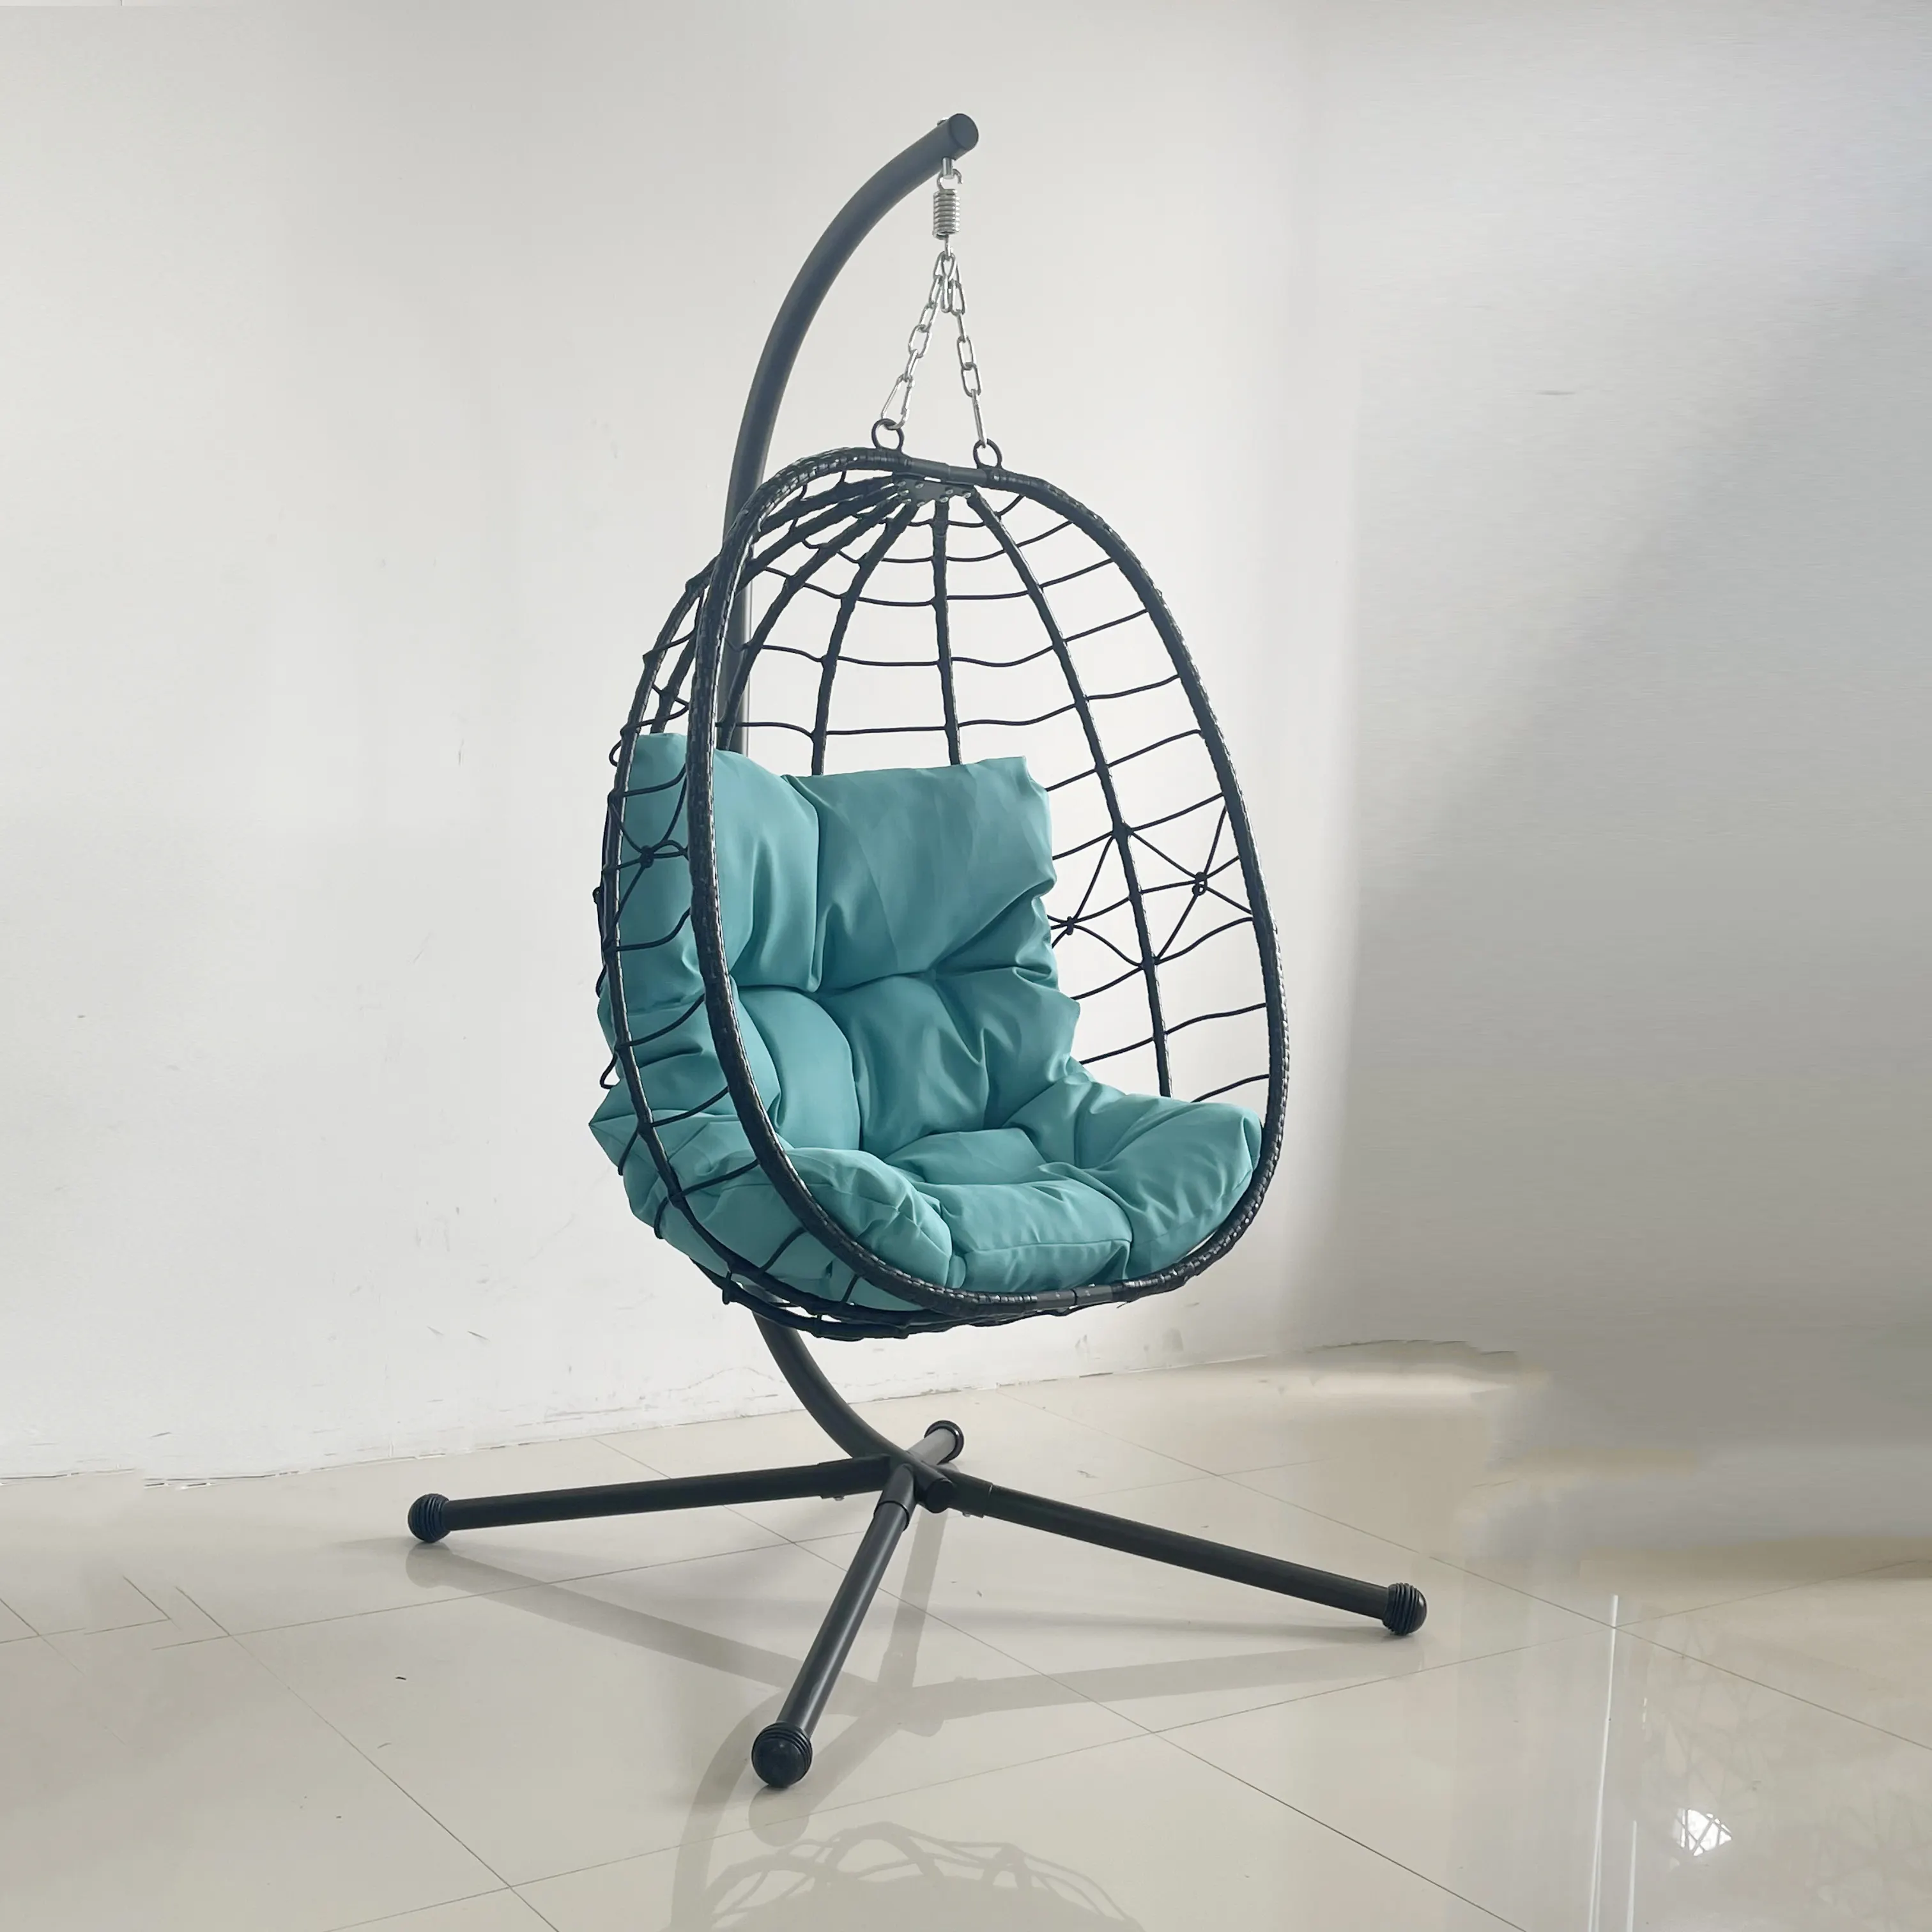 Soporte para silla colgante de resina epoxi, soporte para hamaca con recubrimiento de polvo KD resistente a la oxidación, adecuado para 2 asientos